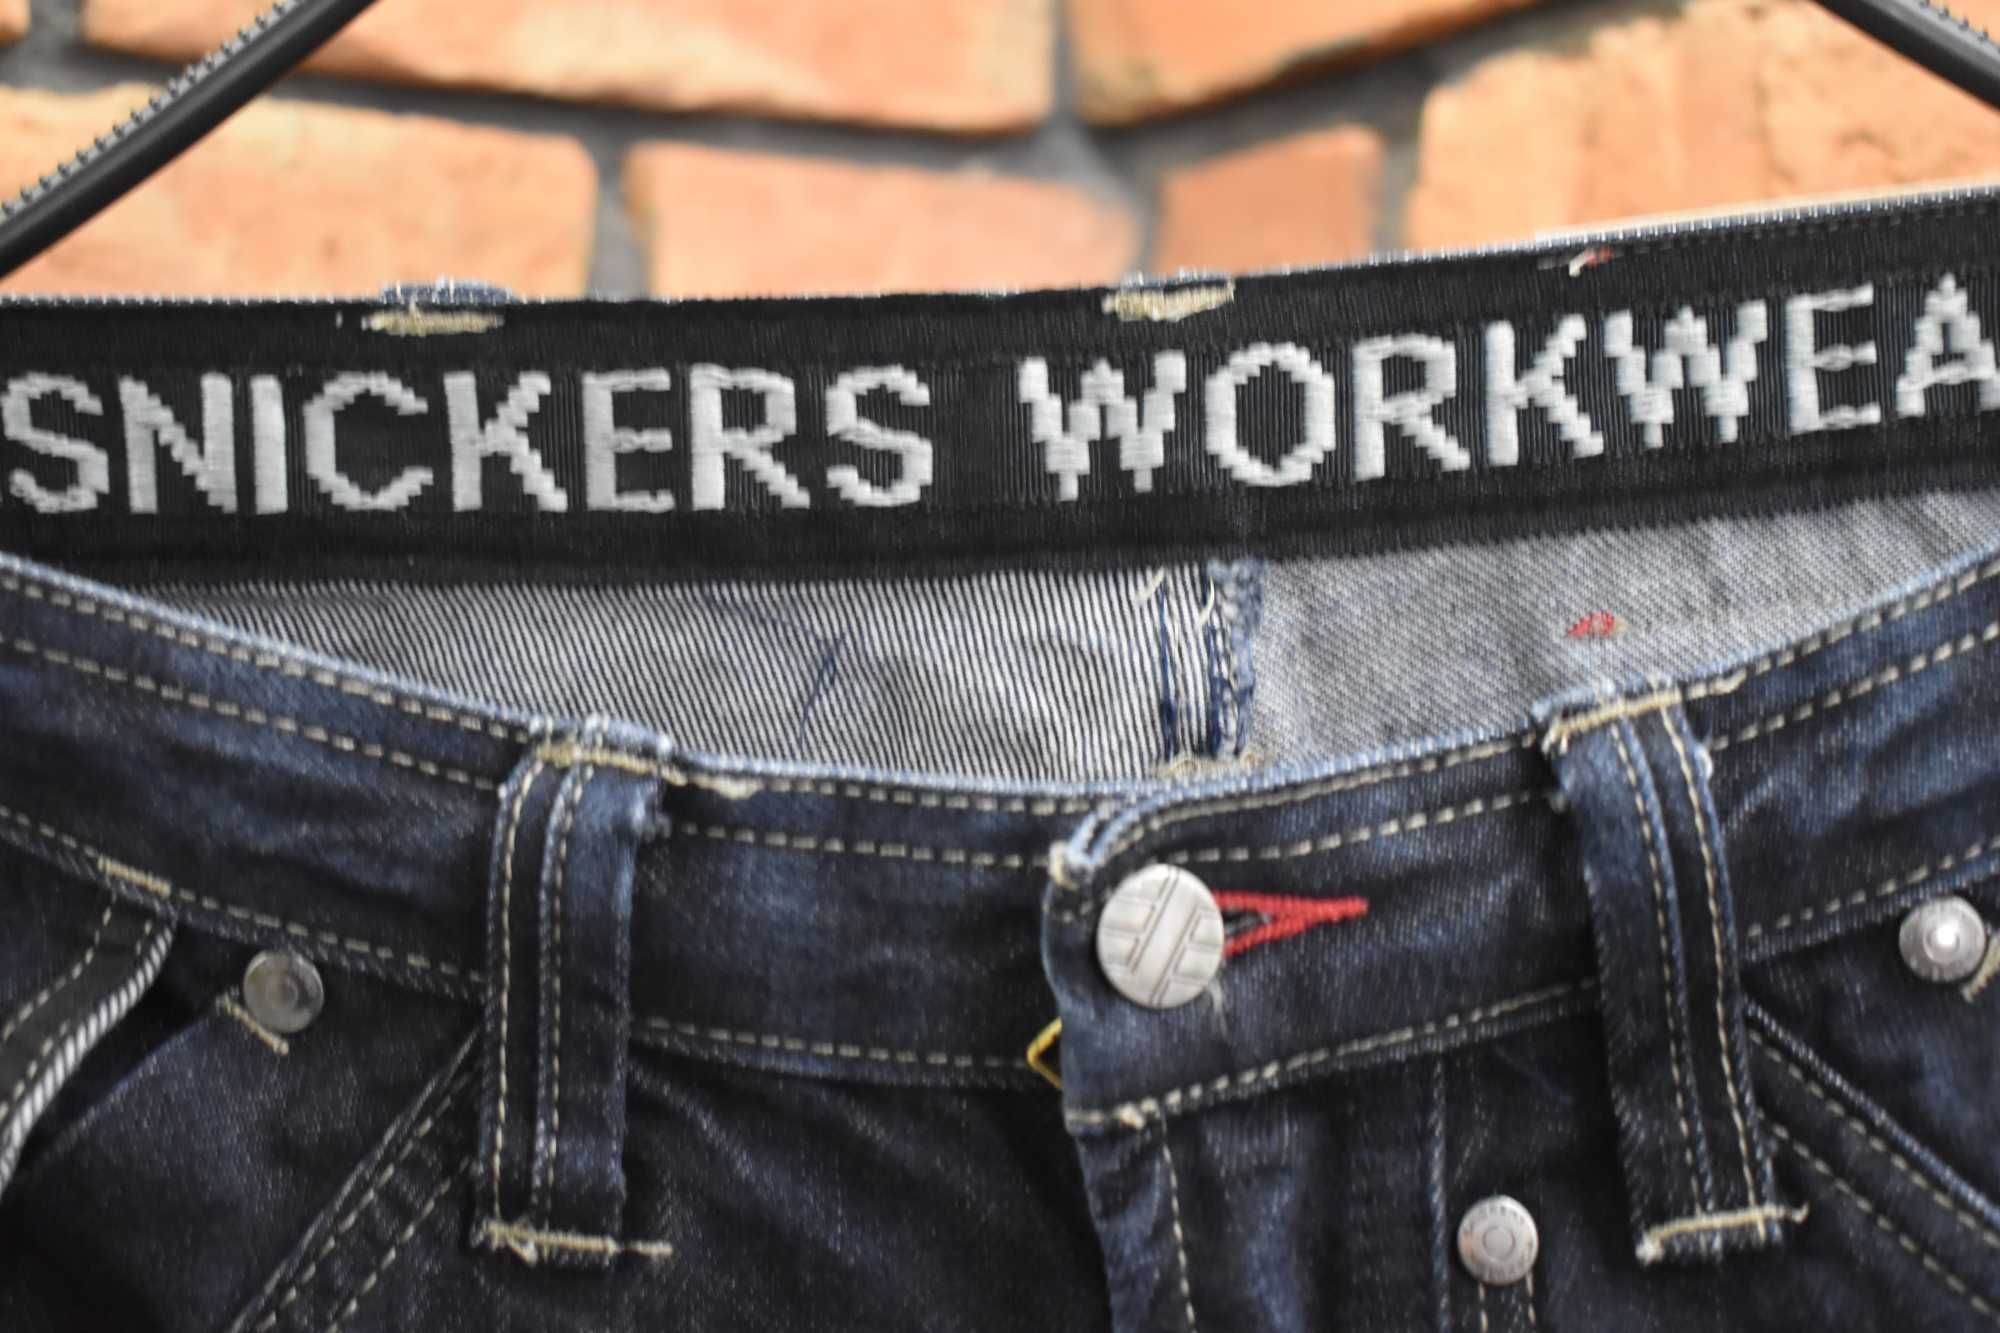 Snickers spodnie robocze Jeans denim bardzo mocne idealne 44 S